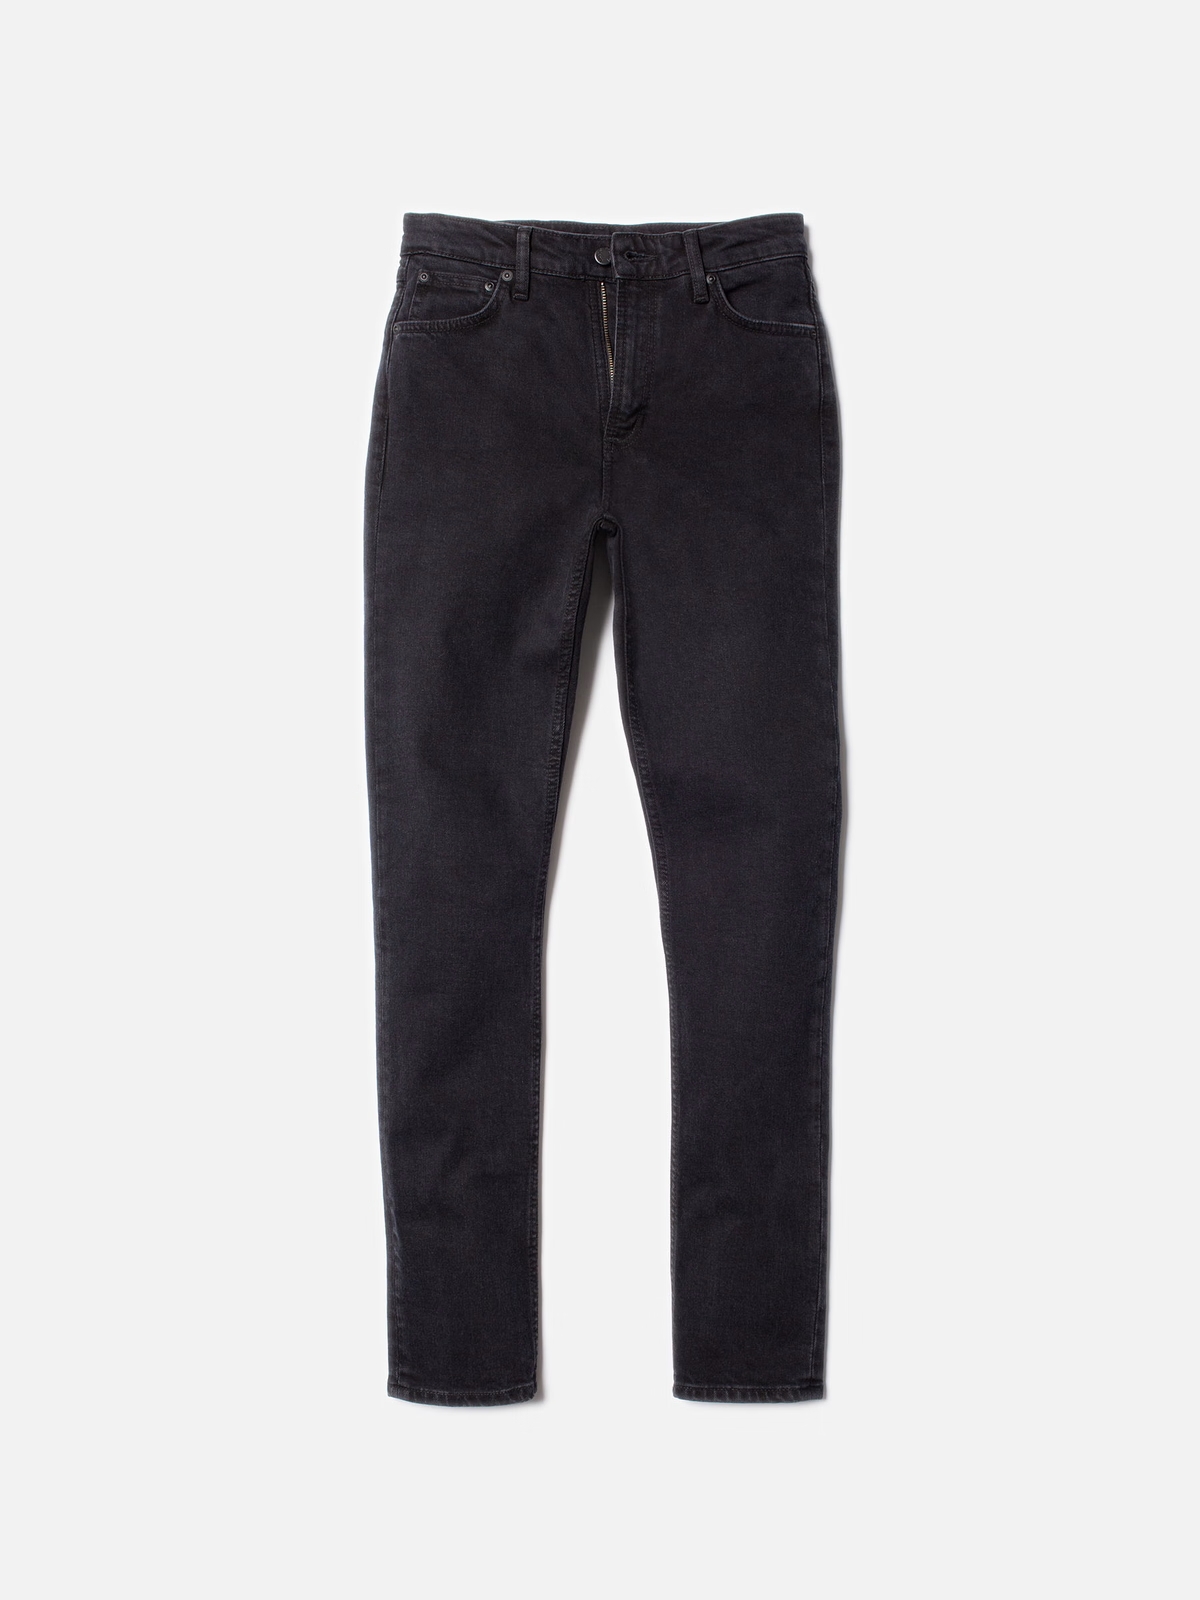 Nudie Jeans Mellow Mae So Black - jeans - Langsamt